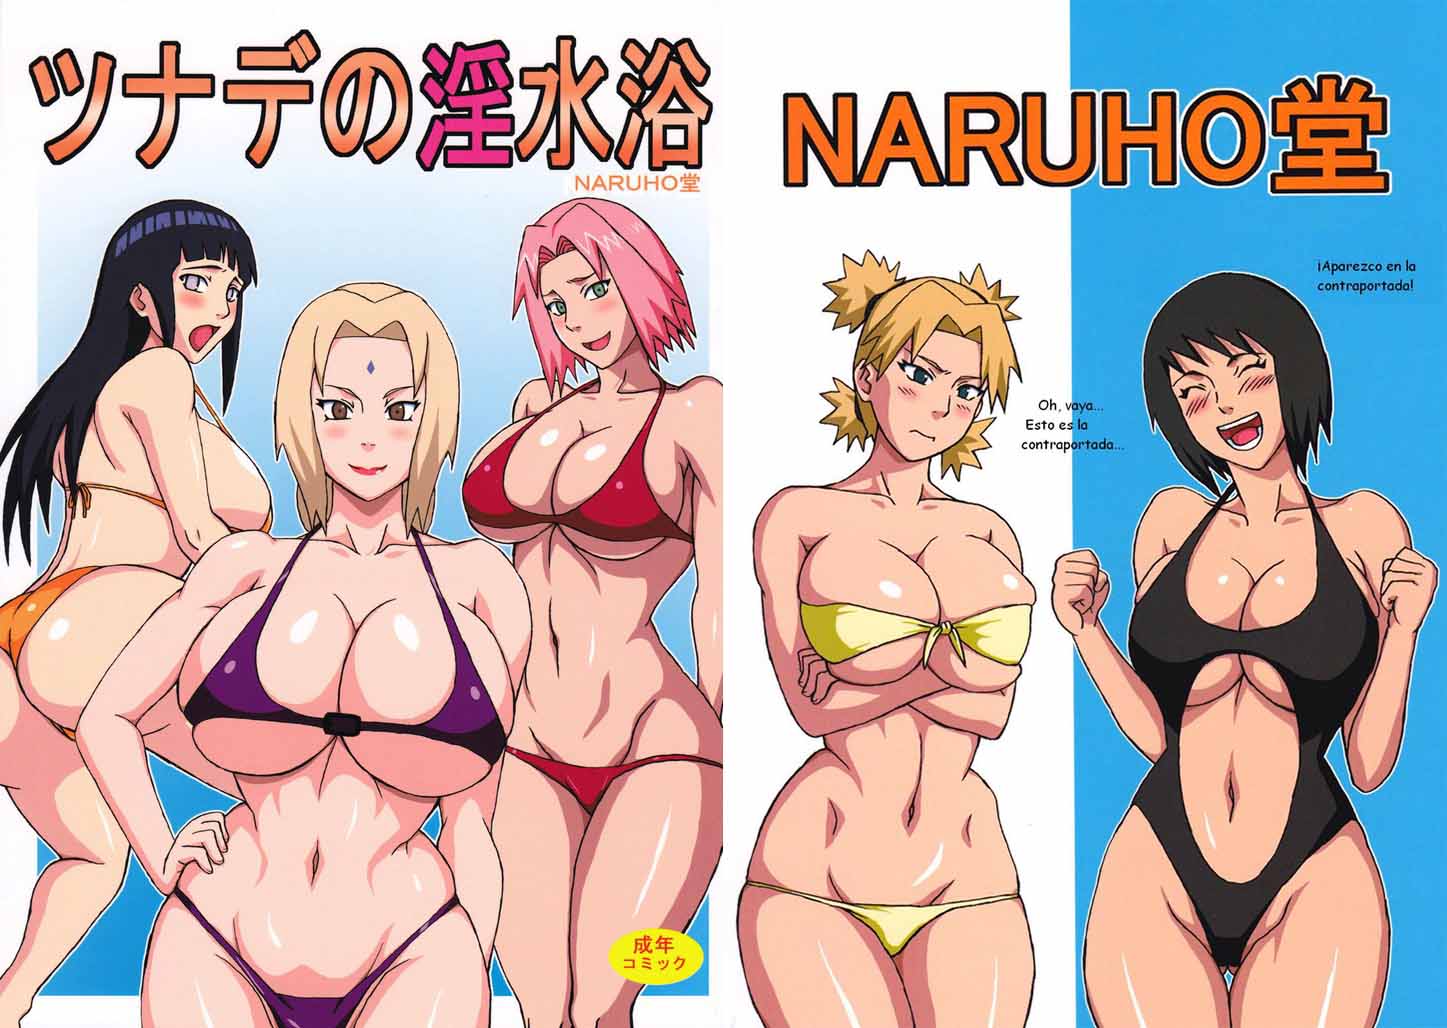 Girl Naruto Porn Comics - Comic Porno Naruto Hinata Sakura desnudas